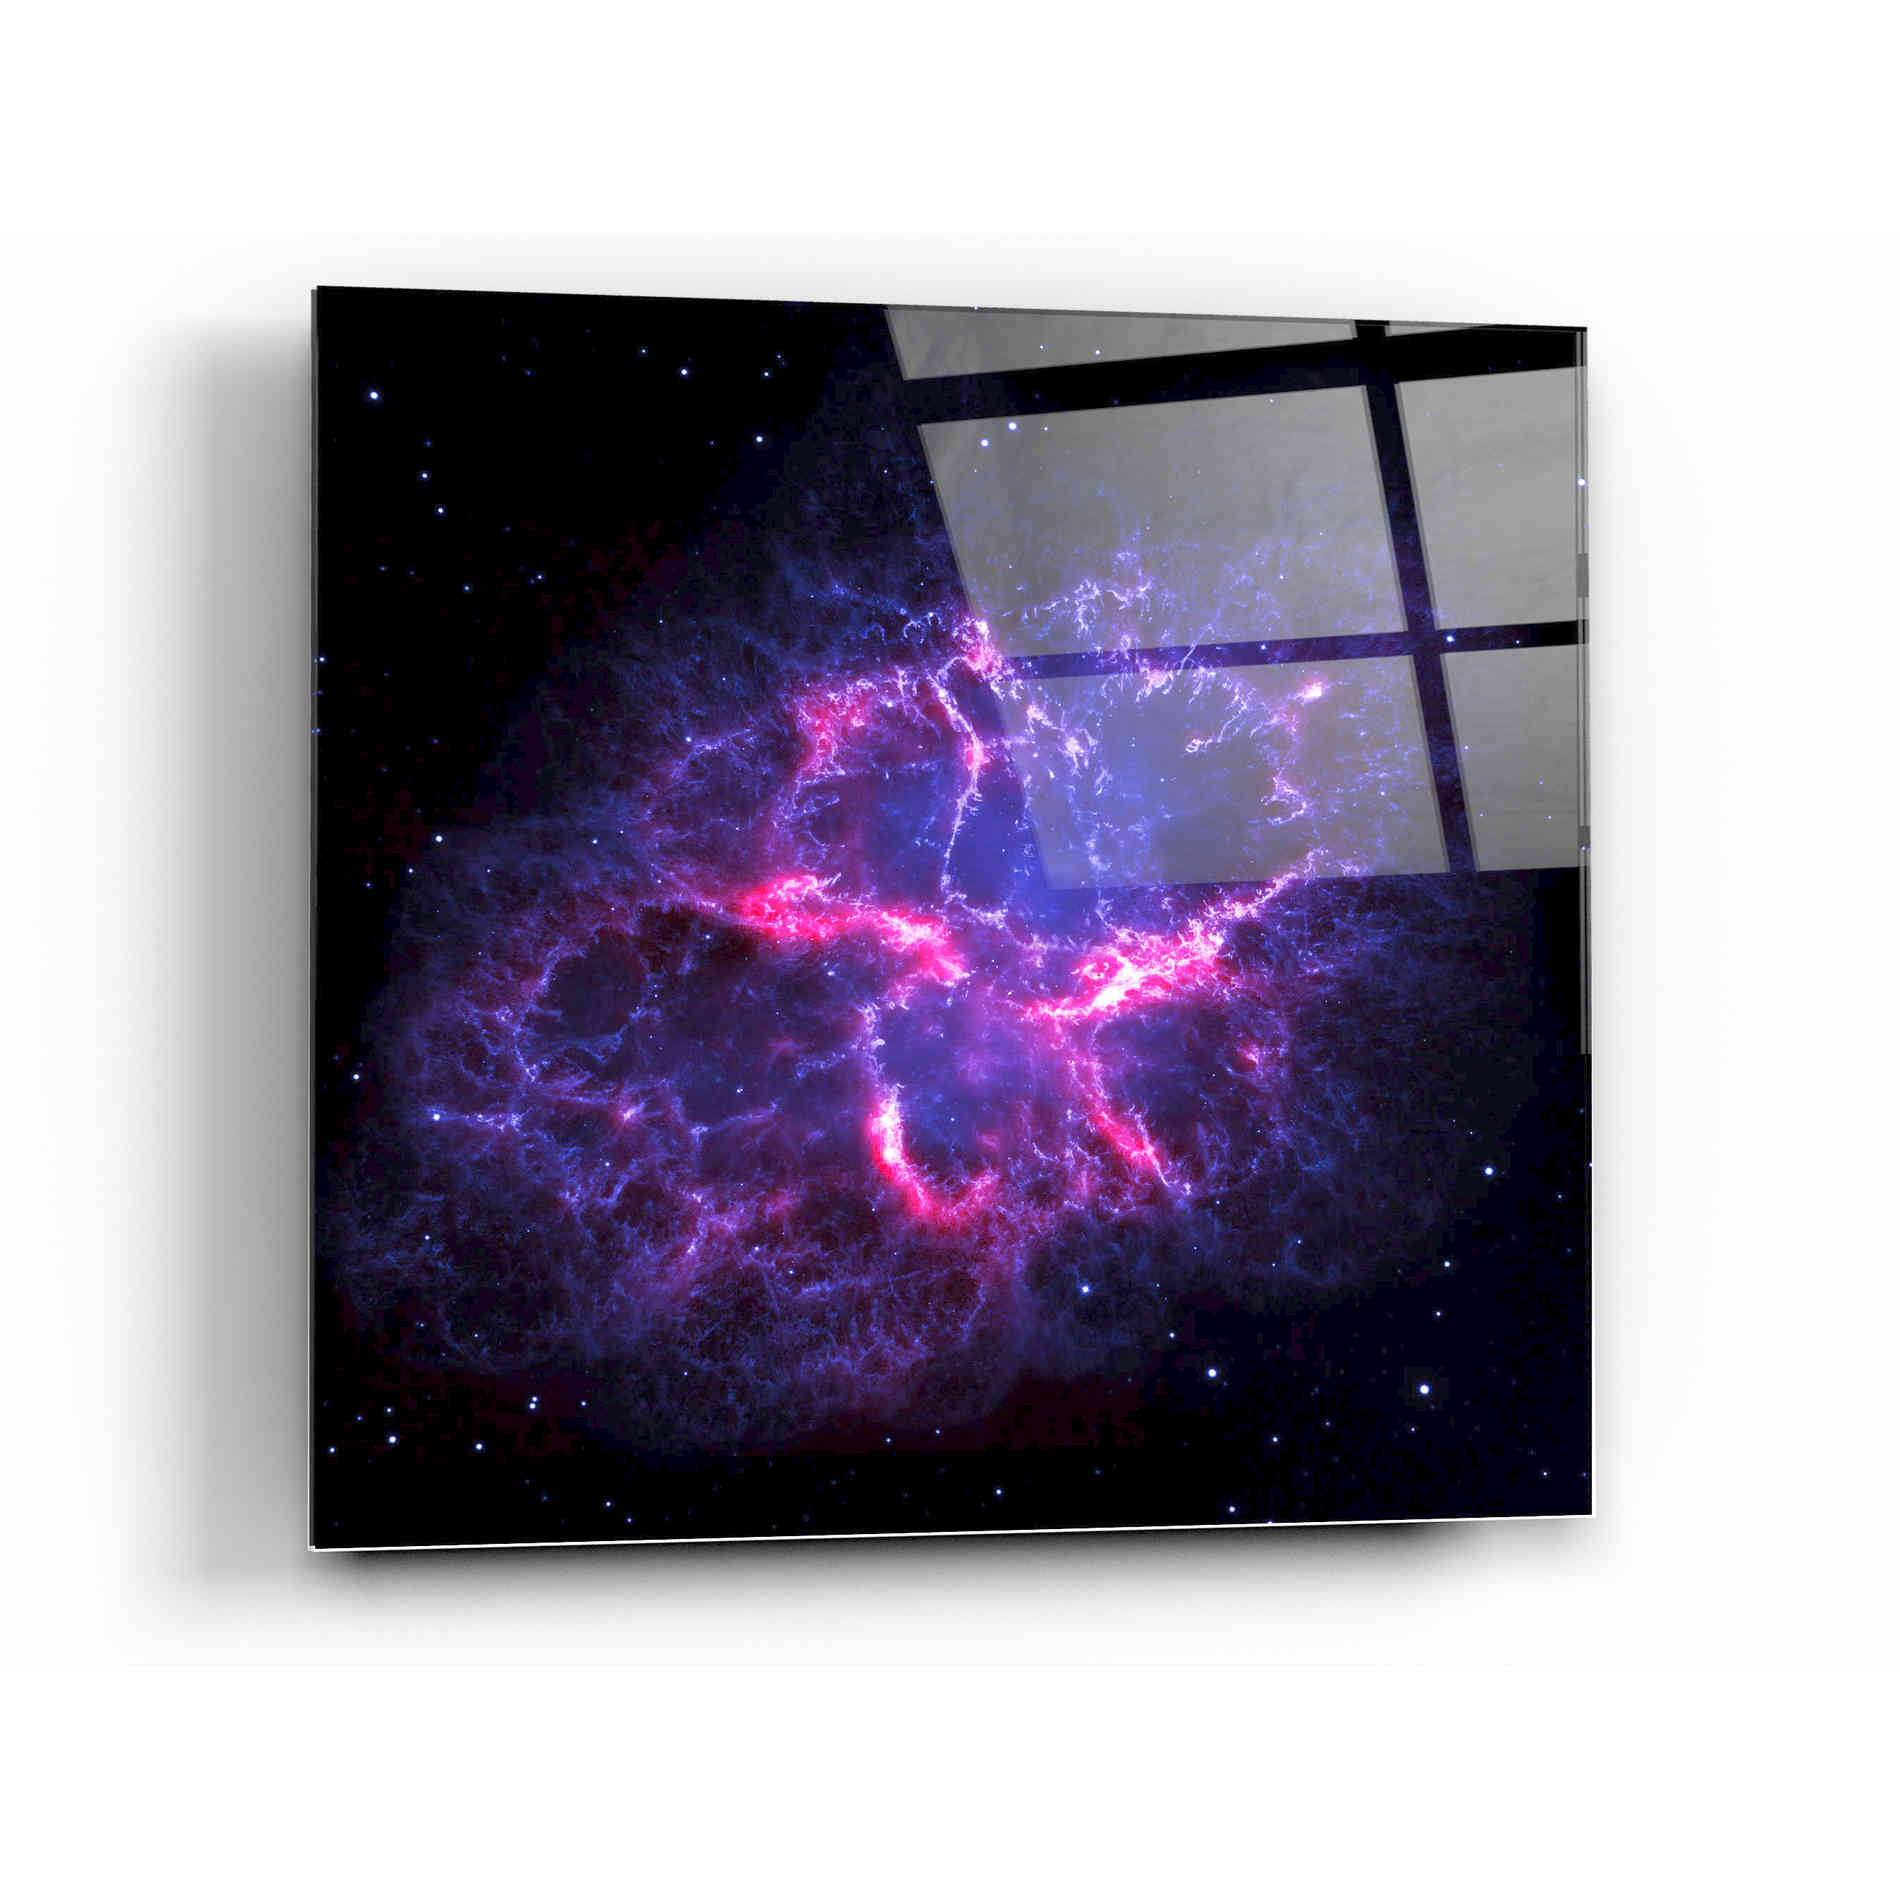 Epic Art "Crab Nebula" Hubble Space Telescope Acrylic Glass Wall Art,12x12